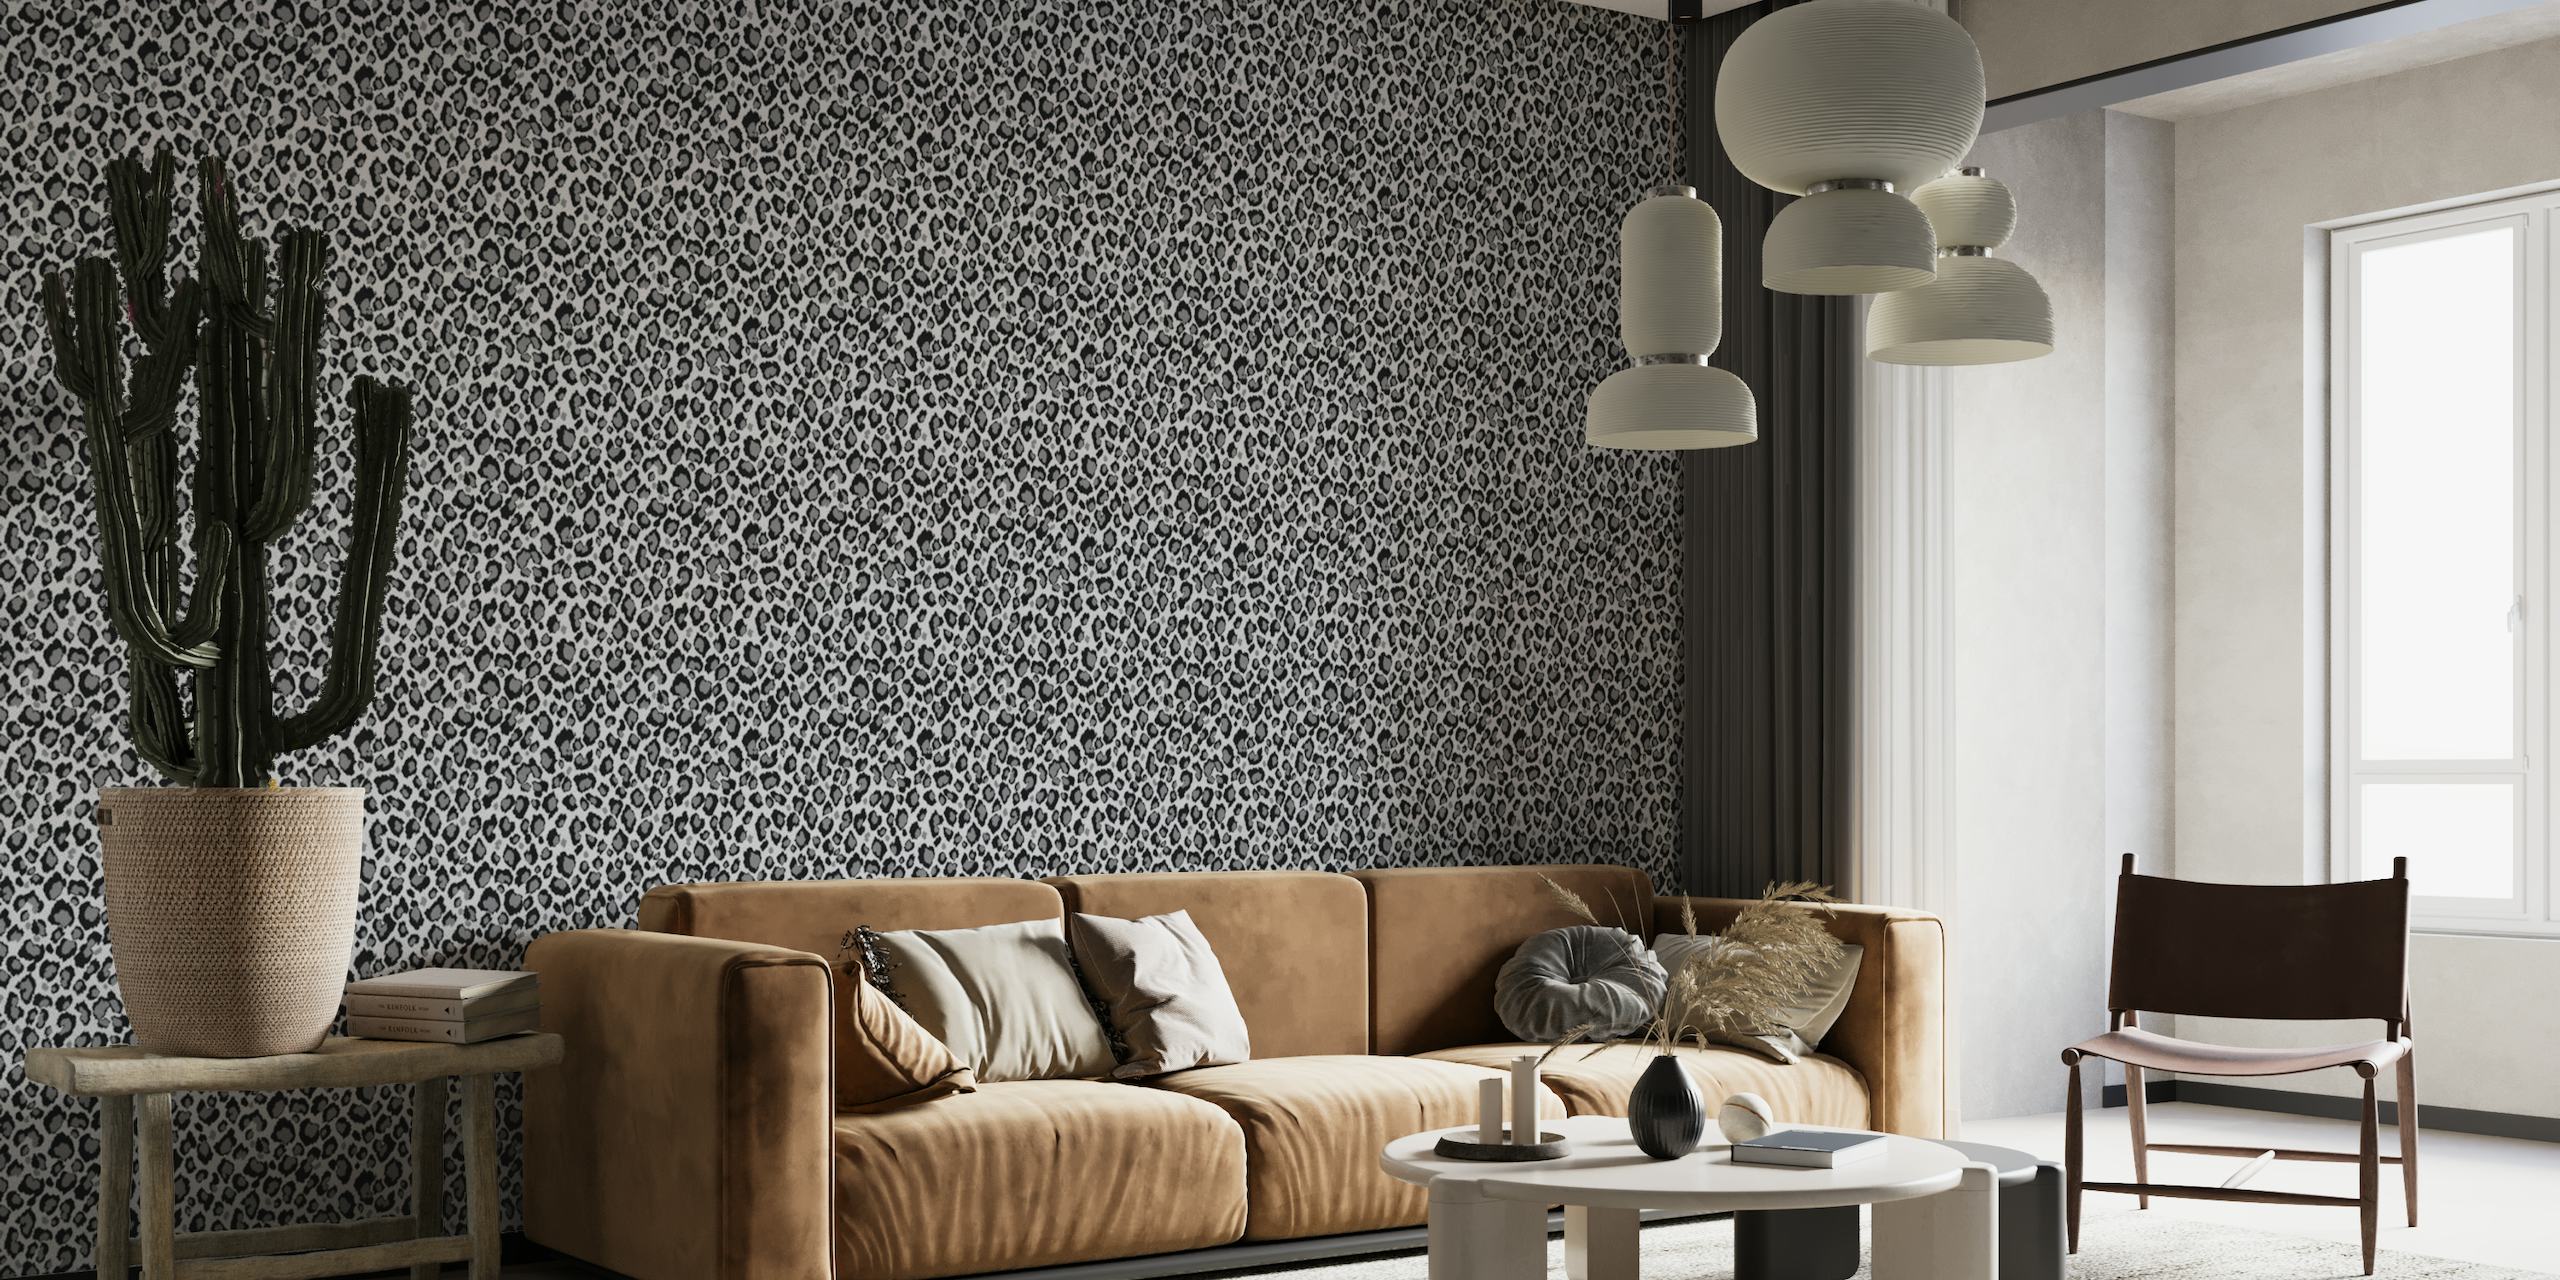 Fotomural vinílico de parede com estampa de leopardo cinza e preto para uma decoração de interiores sofisticada.